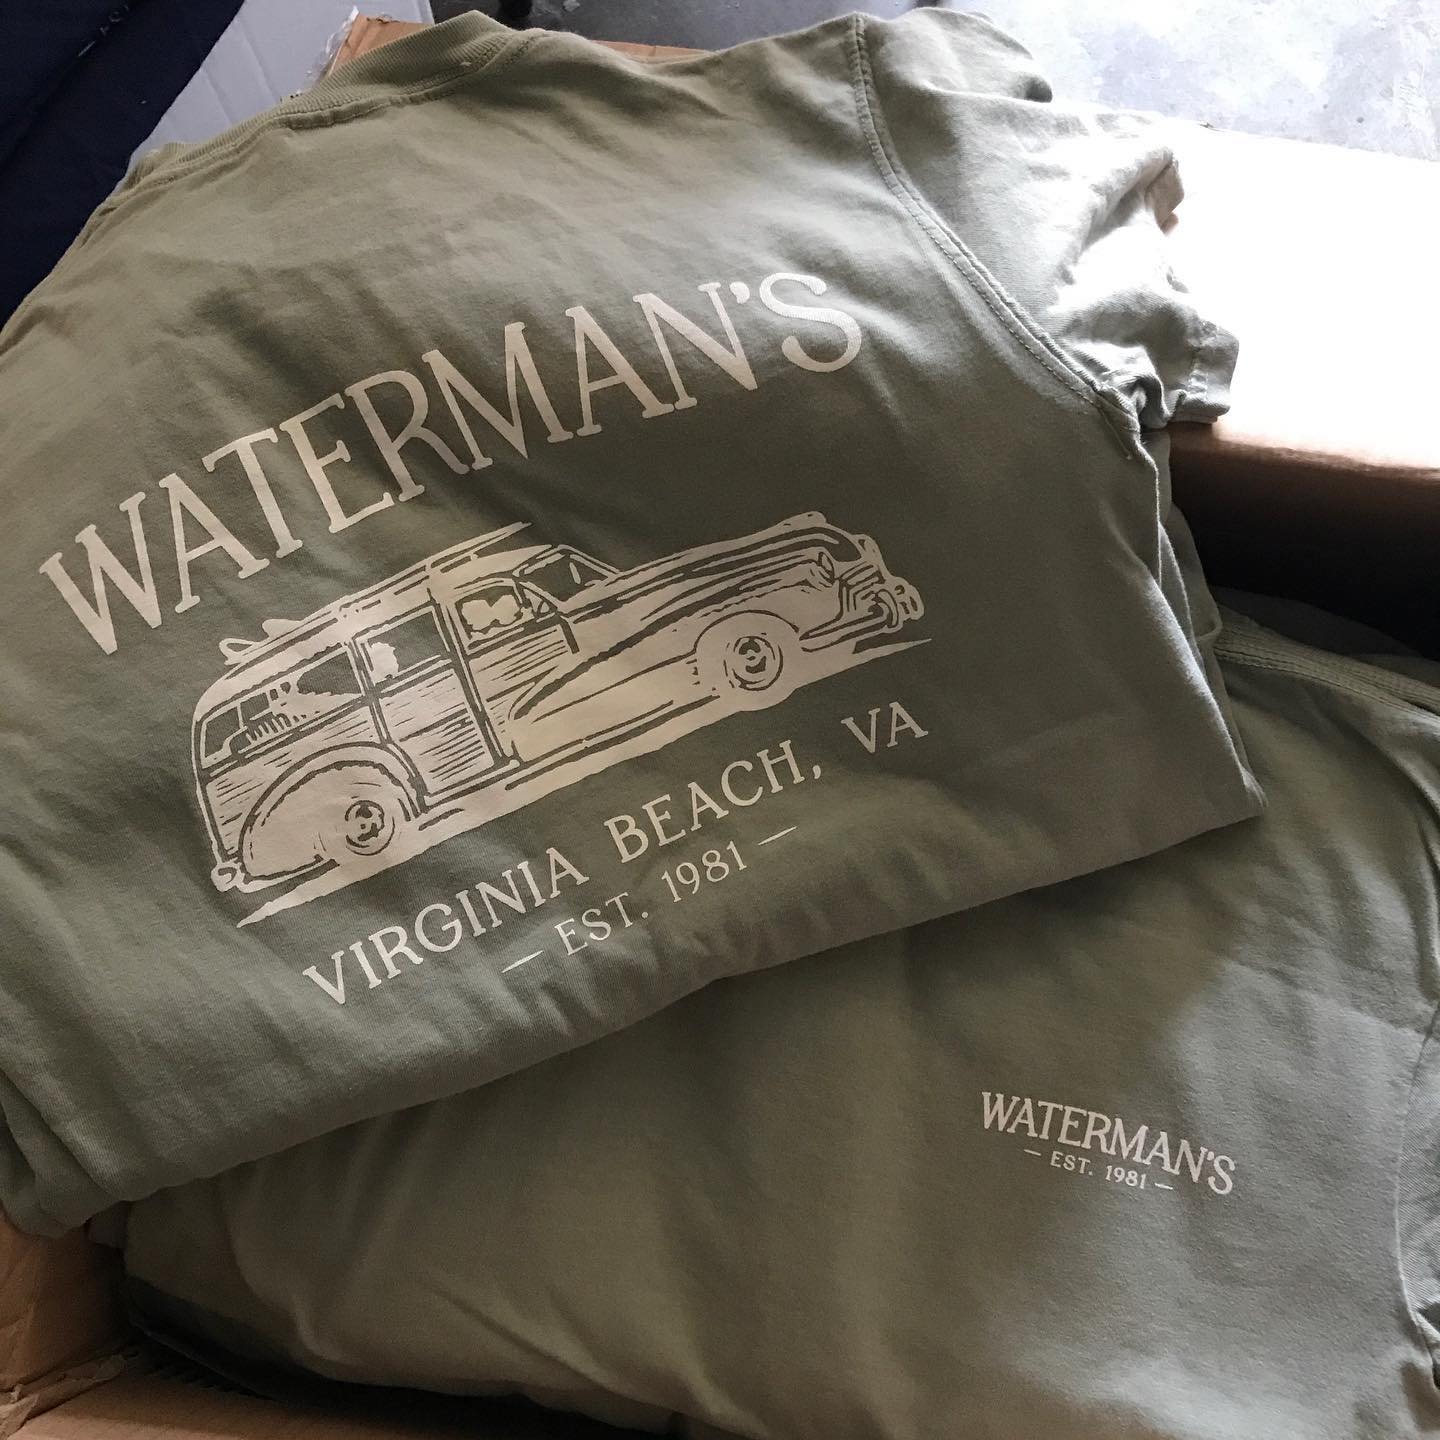 Watermans Virginia Beach t-shirts